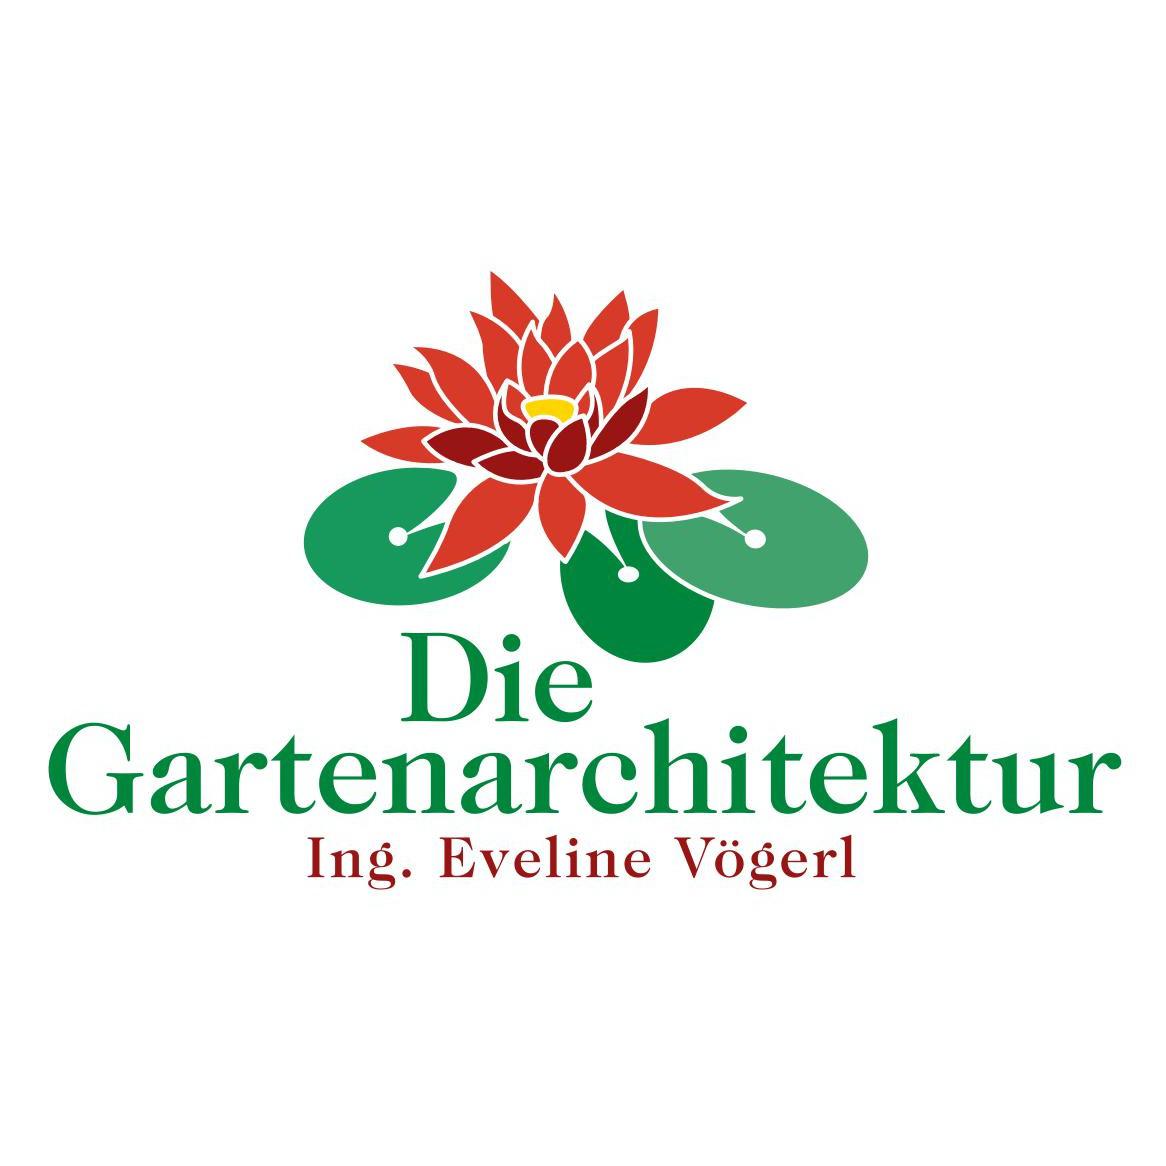 Die Gartenarchitektur Ing Eveline Vögerl in Ebenau Gartengestaltung